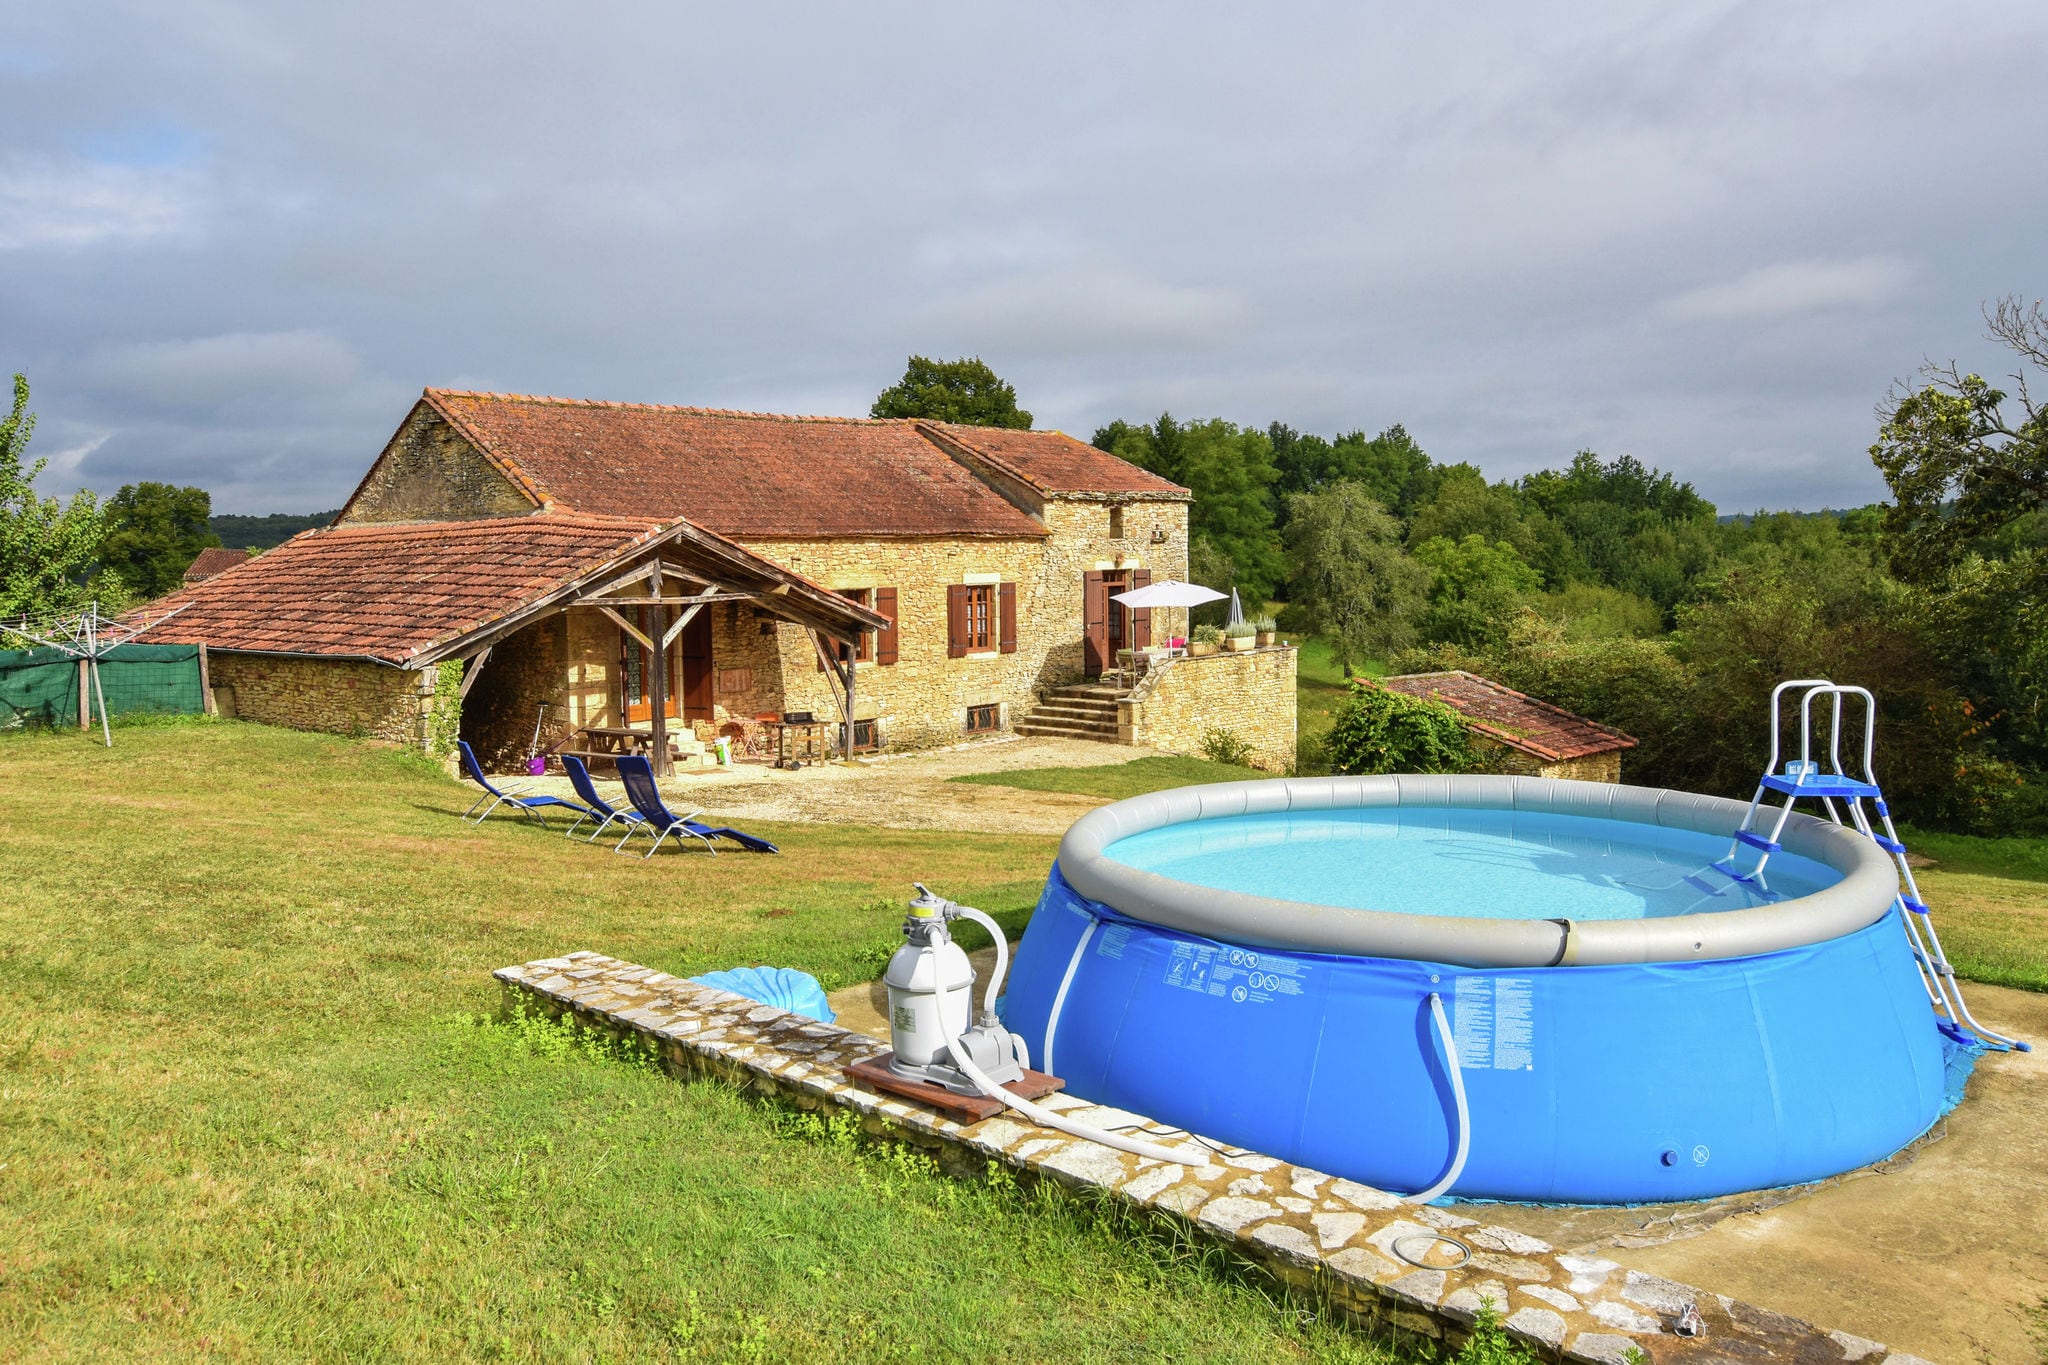 Heerlijk authentiek vakantiehuis met zwembad en een fijne tuin .